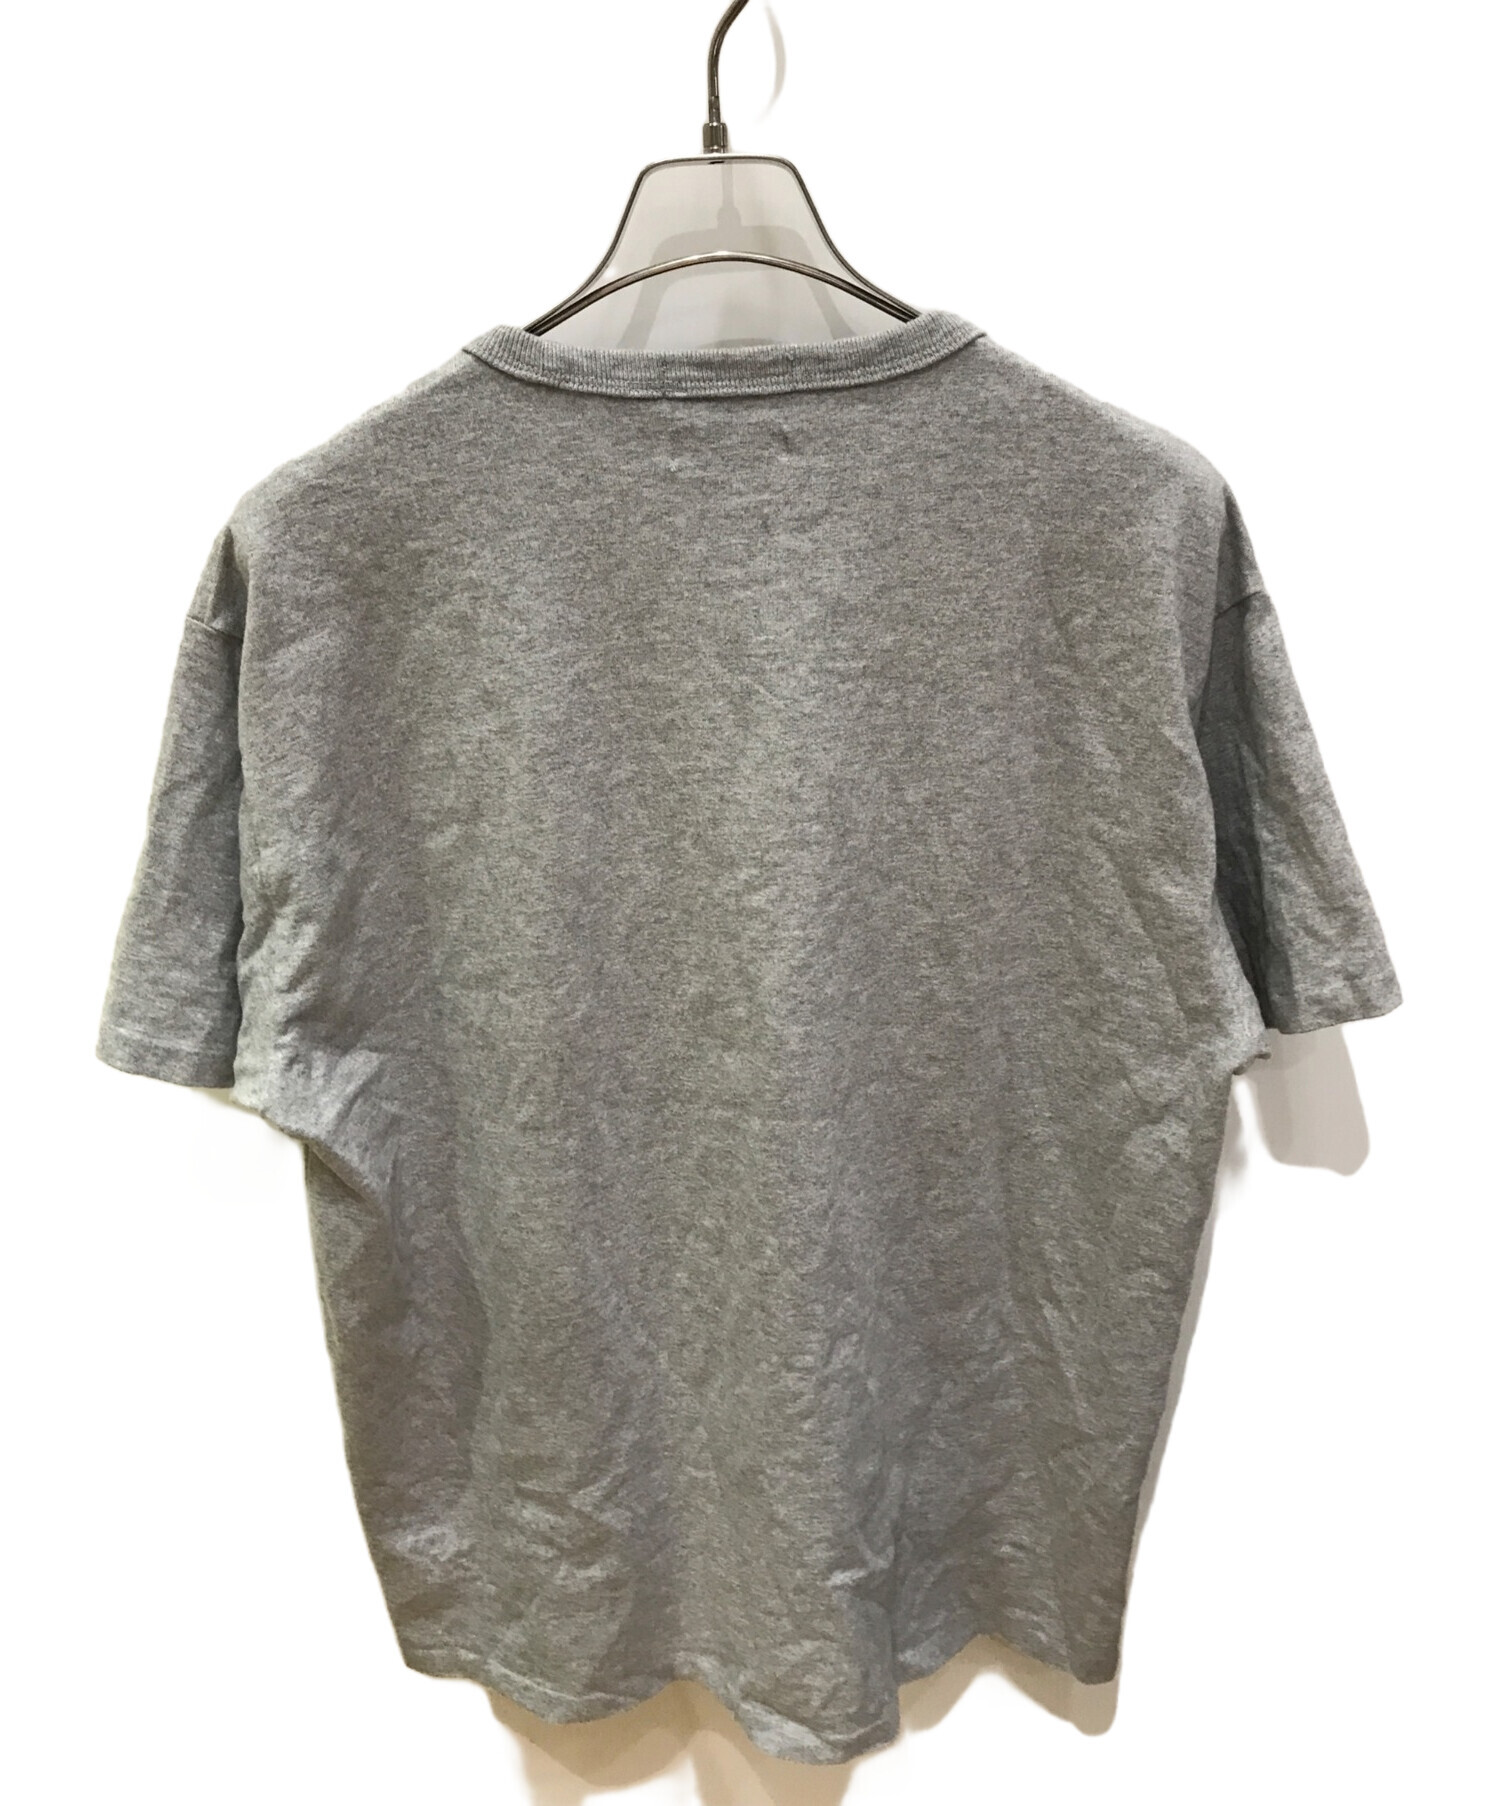 POLO RALPH LAUREN (ポロ・ラルフローレン) BEAMS (ビームス) ポニー刺繍Tシャツ グレー サイズ:M